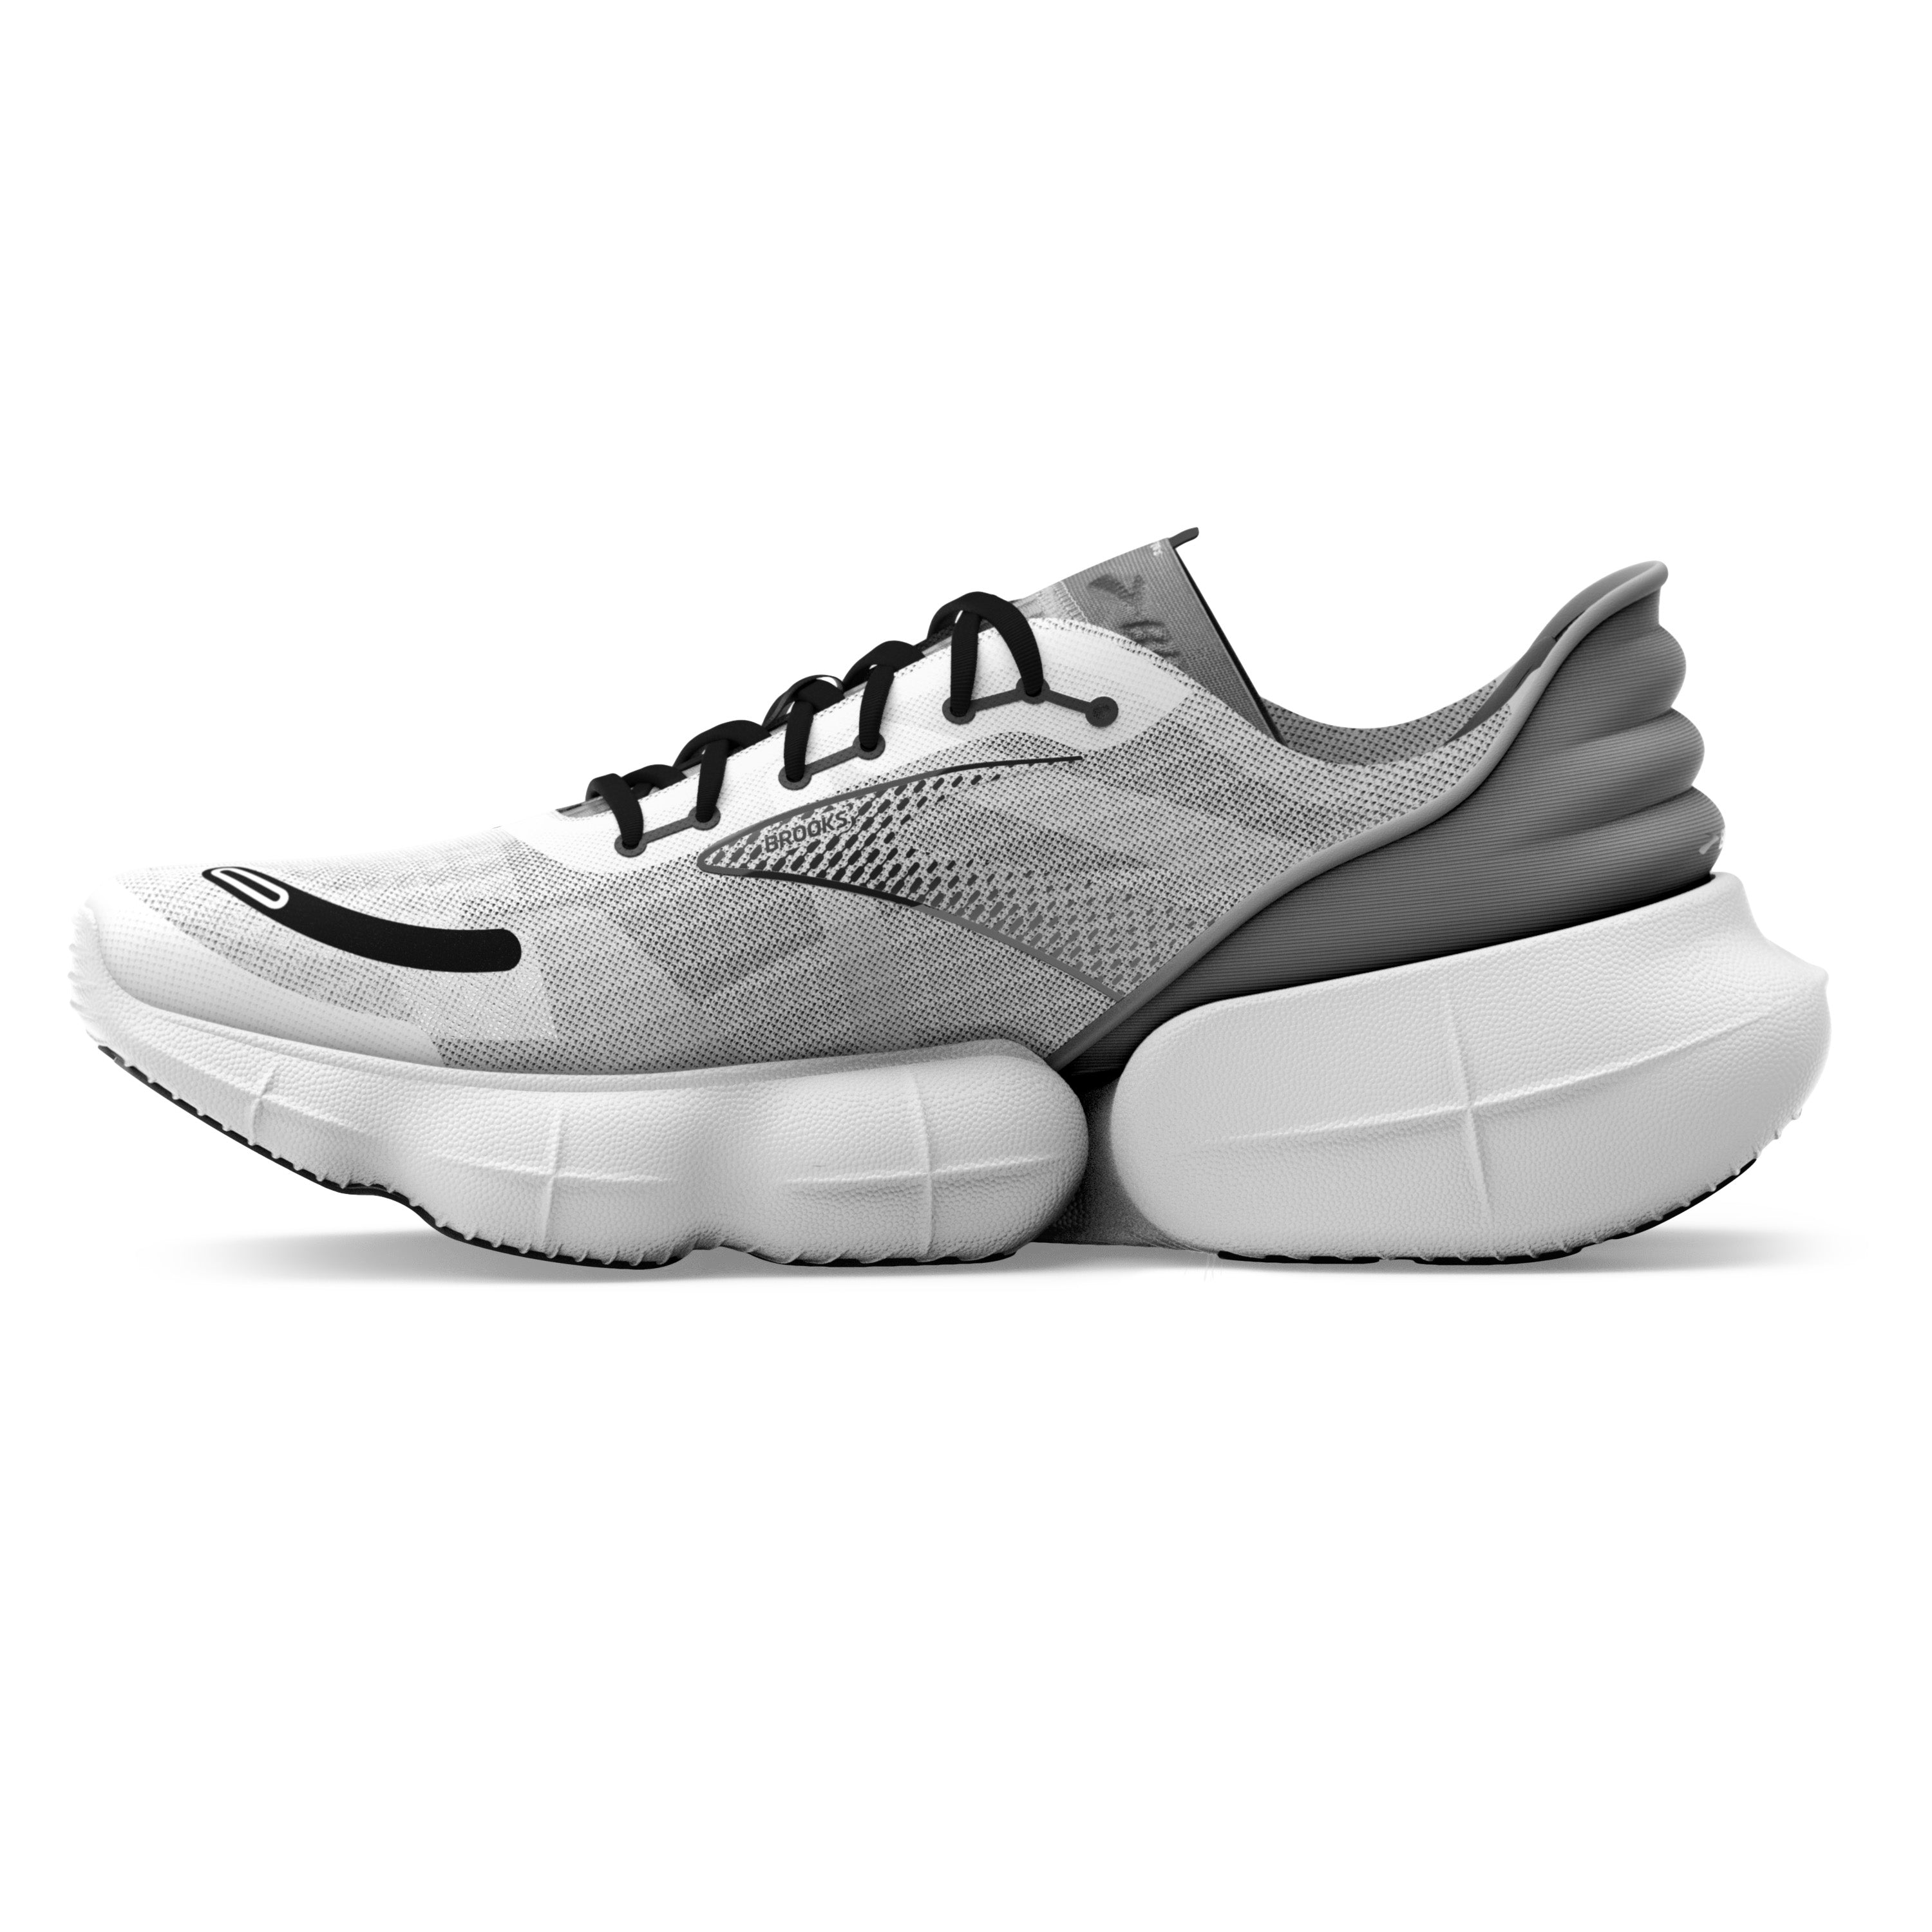 Aurora-BL Men's Running Shoes